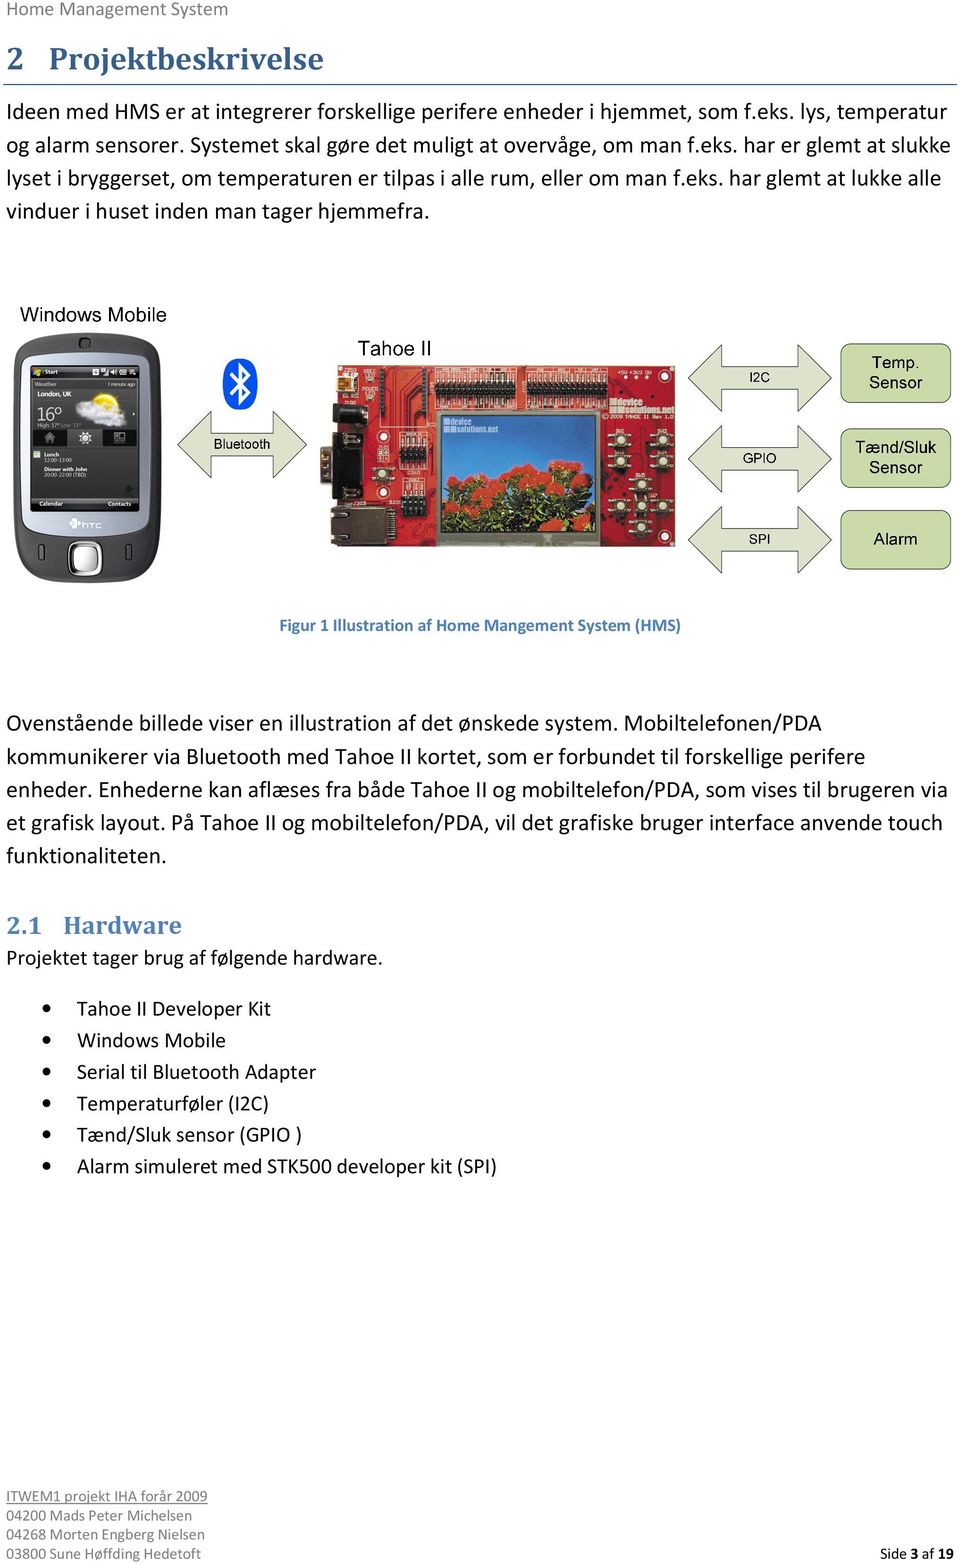 Mobiltelefonen/PDA kommunikerer via Bluetooth med Tahoe II kortet, som er forbundet til forskellige perifere enheder.